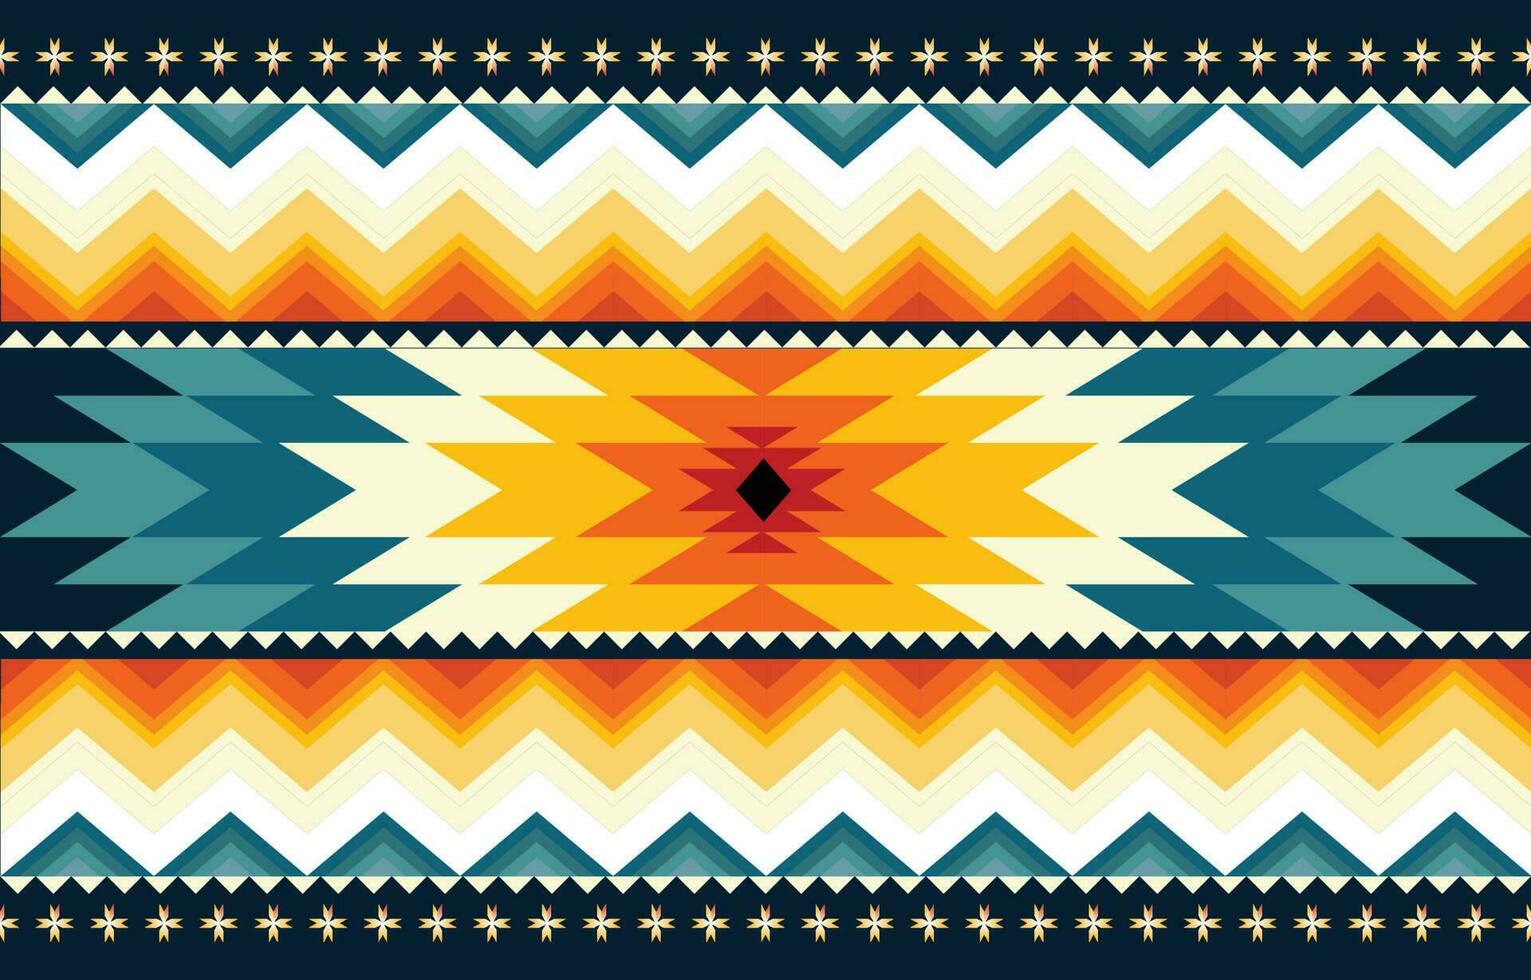 geometrico etnico modello vettore. africano, americano, messicano, occidentale azteco motivo a strisce e boemo modello. progettato per sfondo, carta da parati, stampa, tappeto, avvolgimento, piastrelle, batik.vettore illustrato. vettore